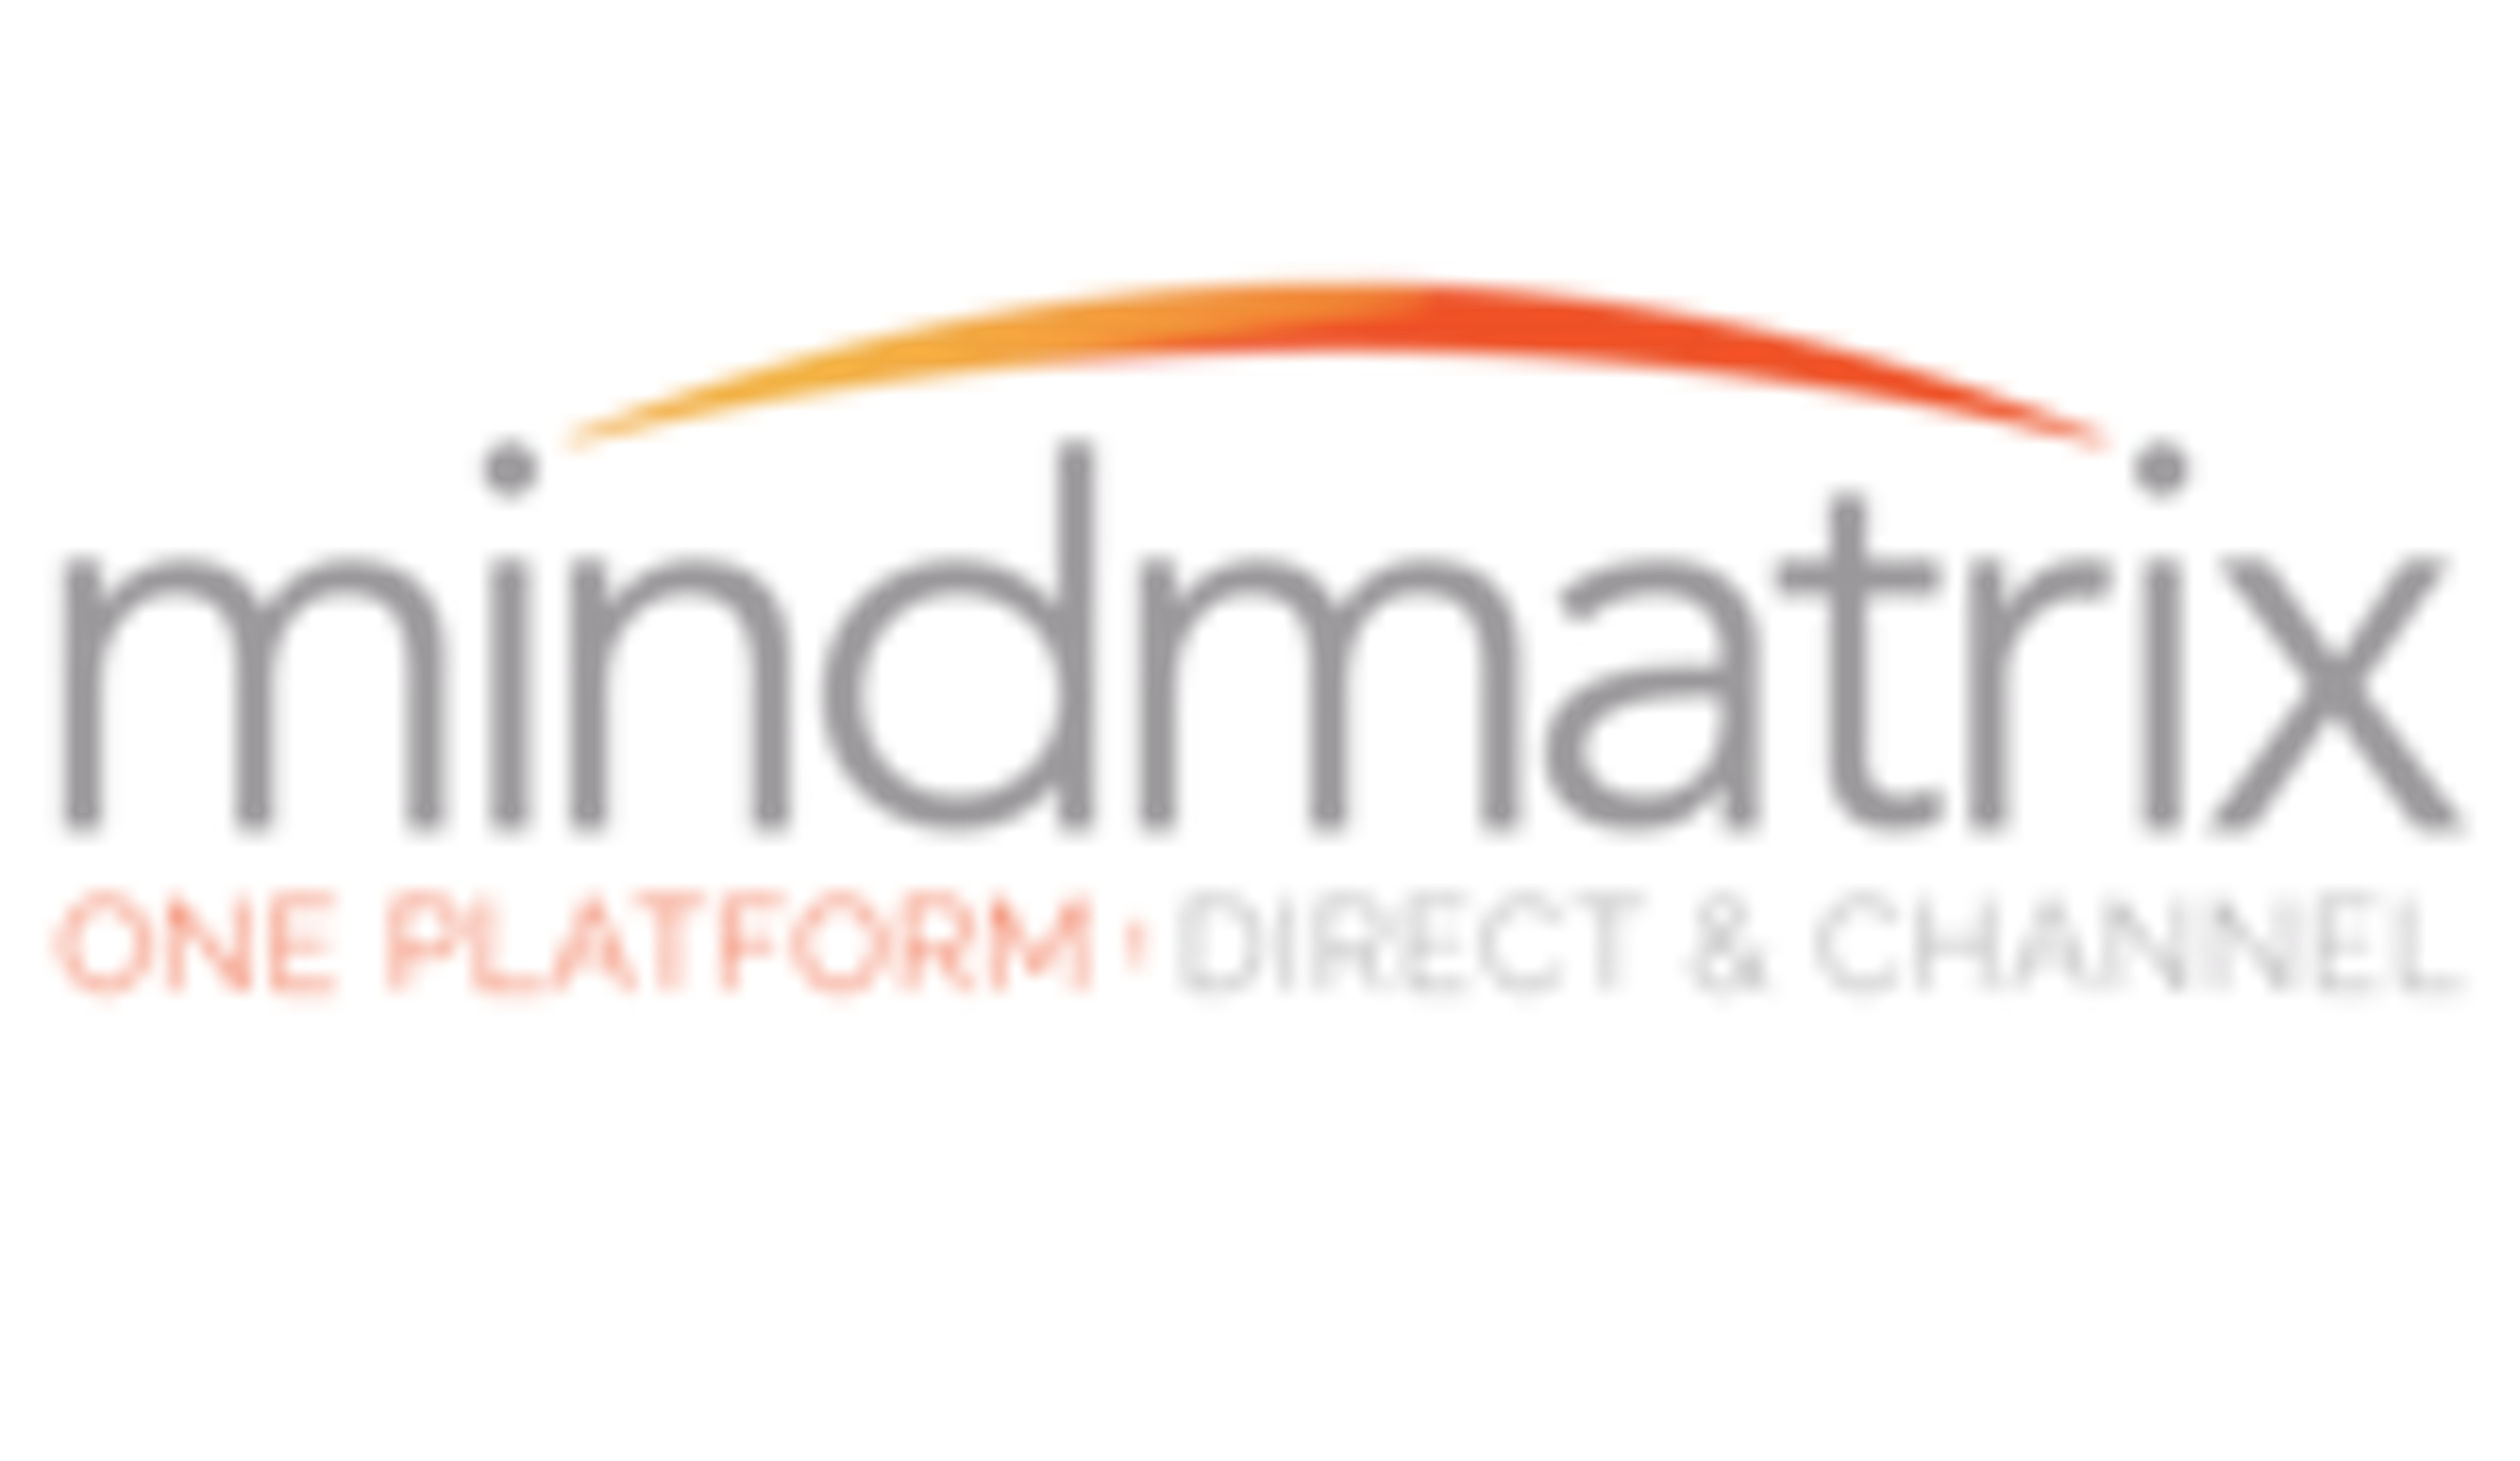 Mindmatrix Logo